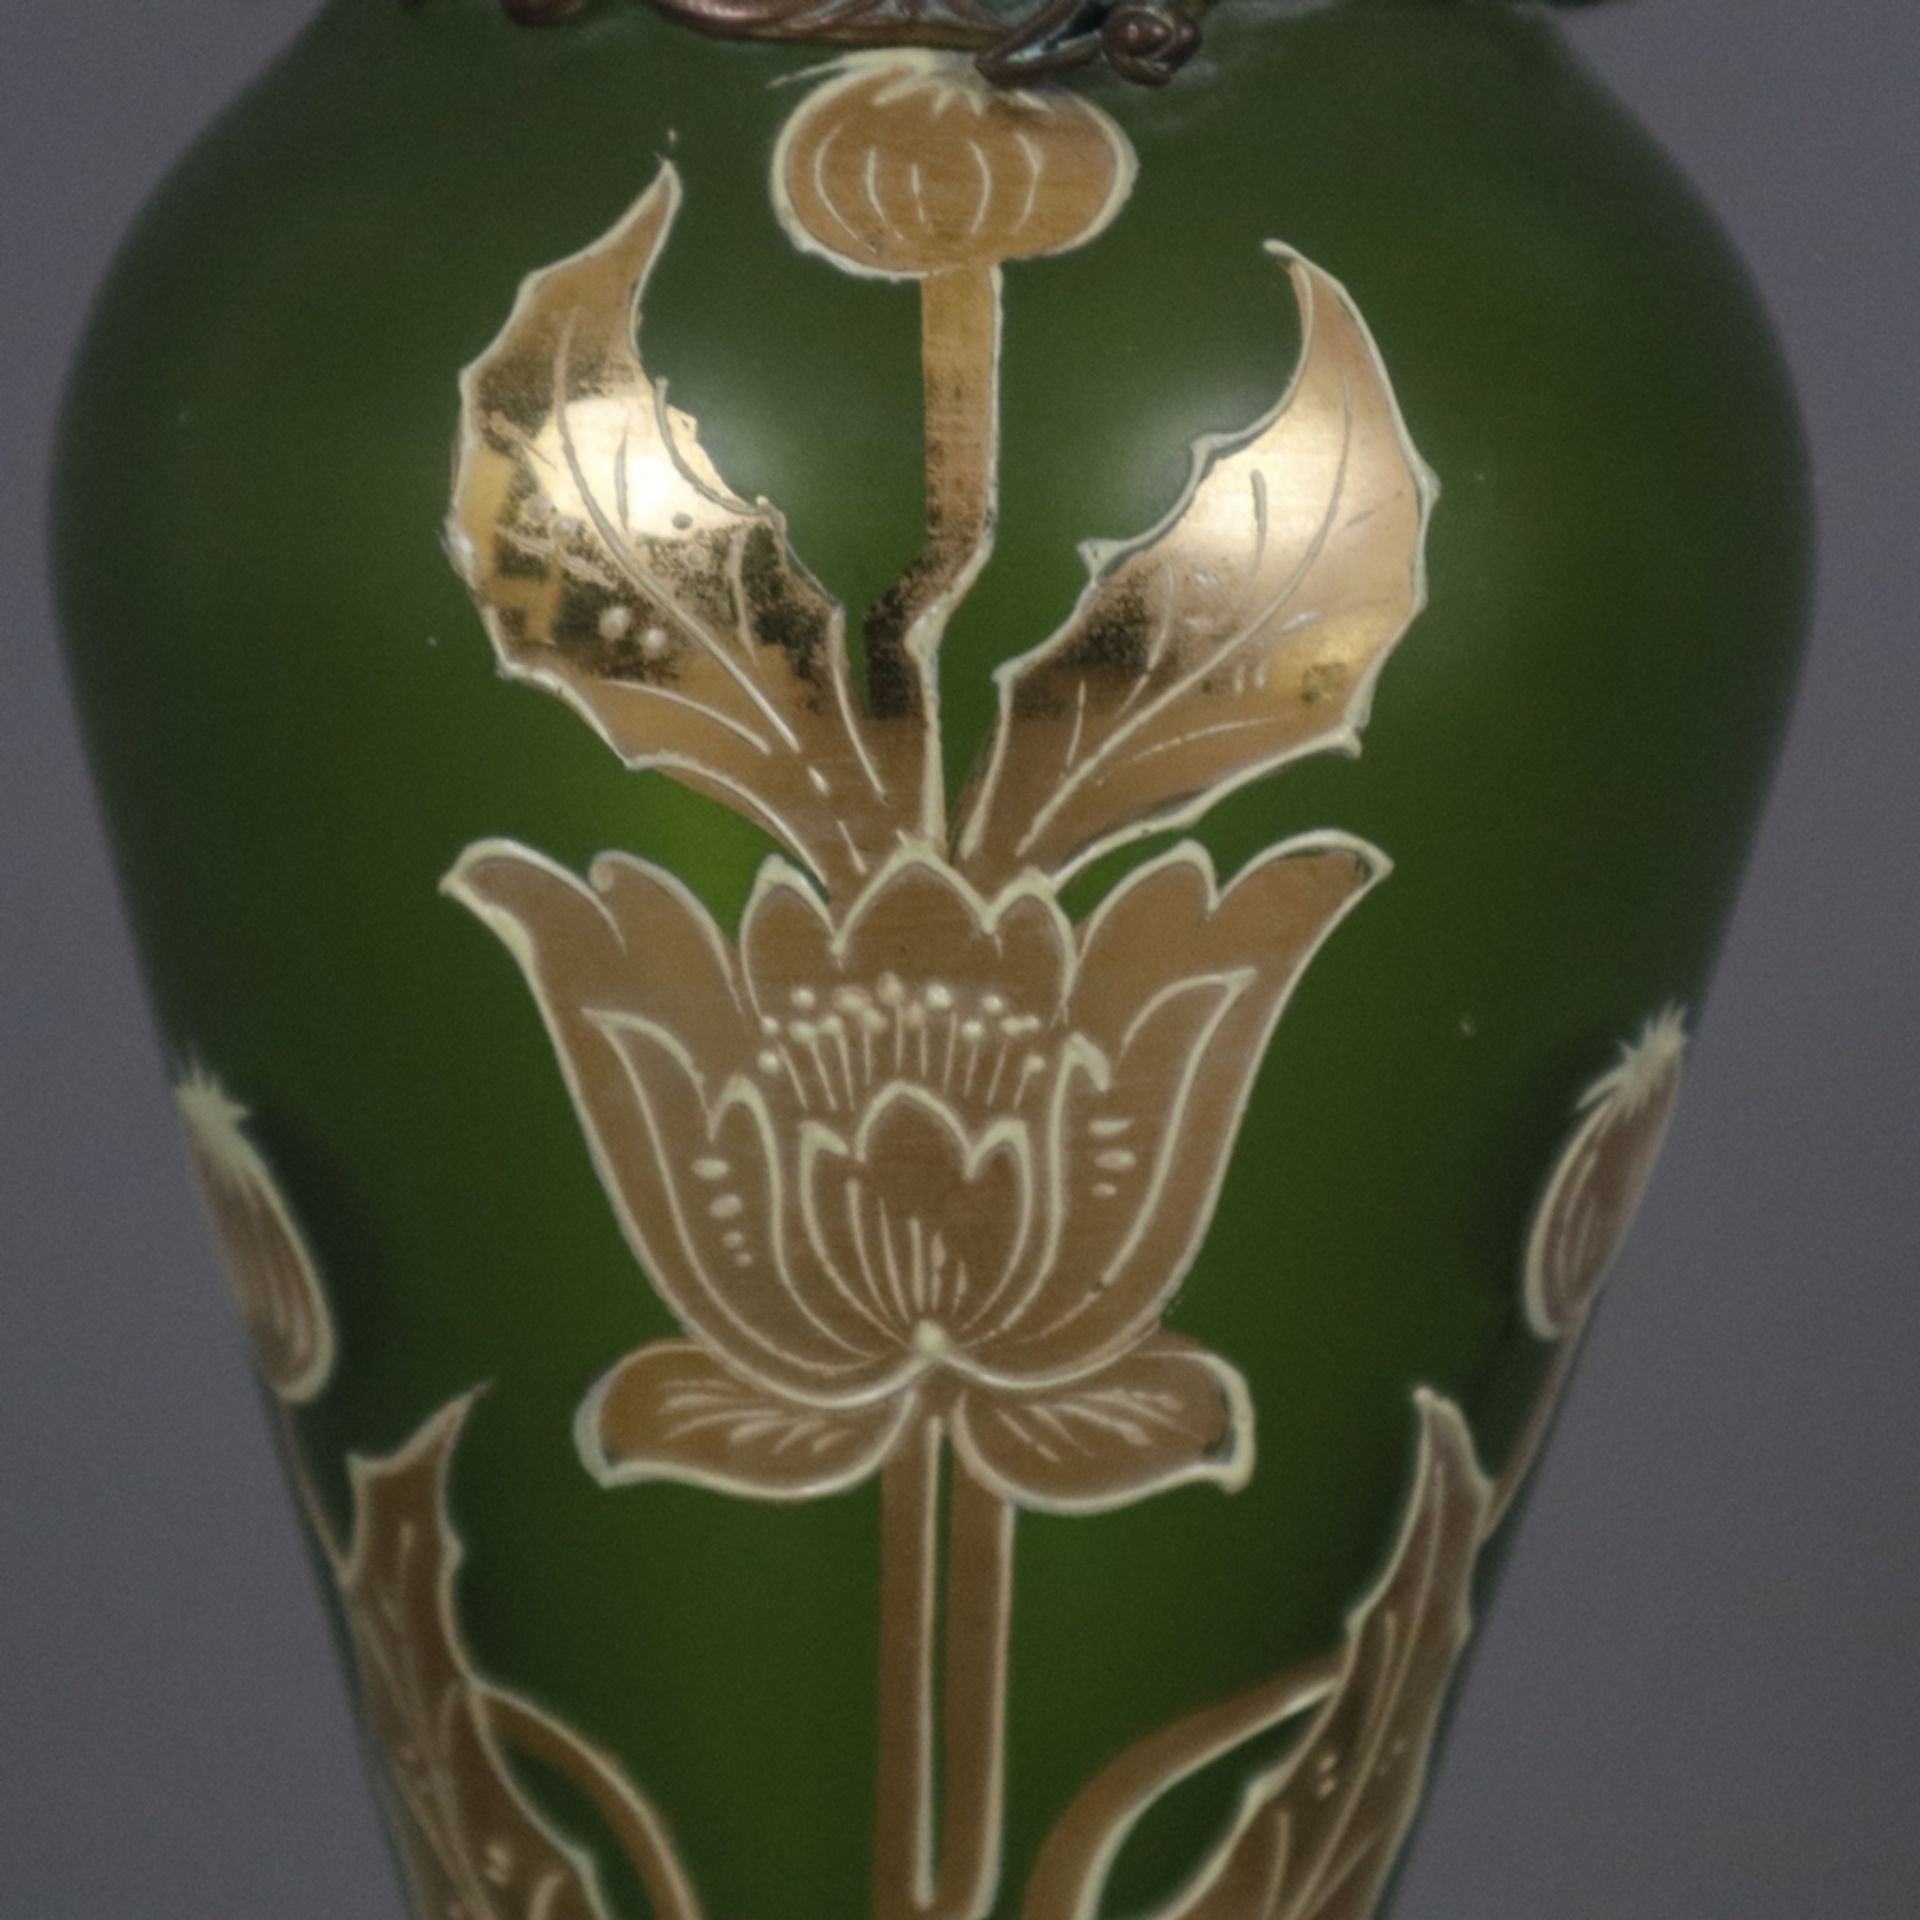 Jugendstil-Glasvase mit Metallmontur - wohl Frankreich um 1900, Klarglas mit grünem Unterfang, scha - Bild 4 aus 8